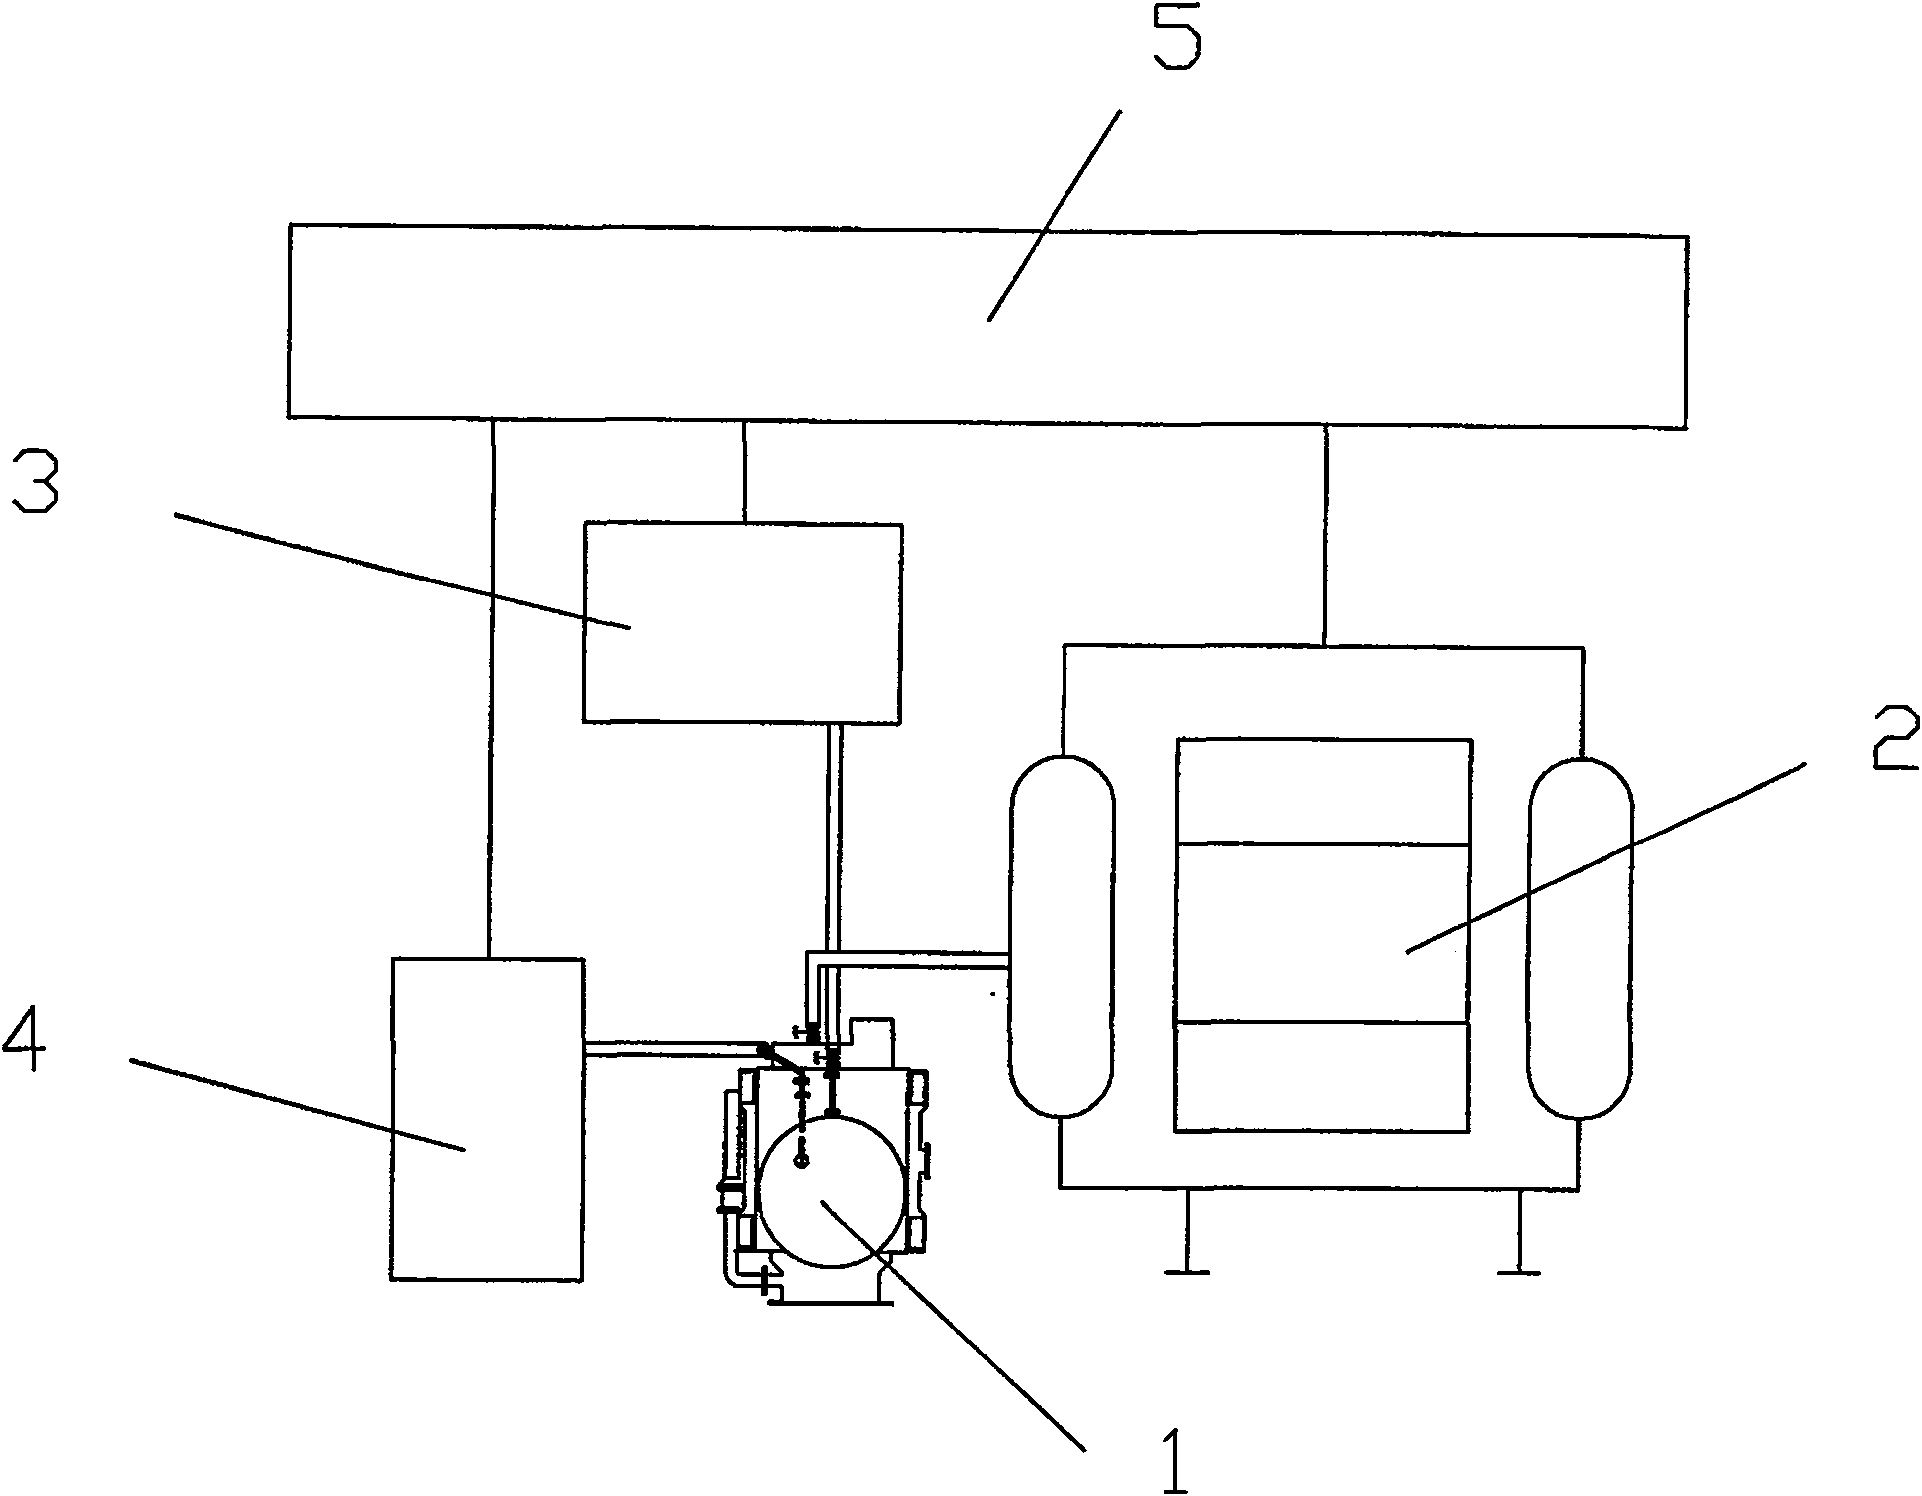 Technique and apparatus for oiling silicon oil transformer